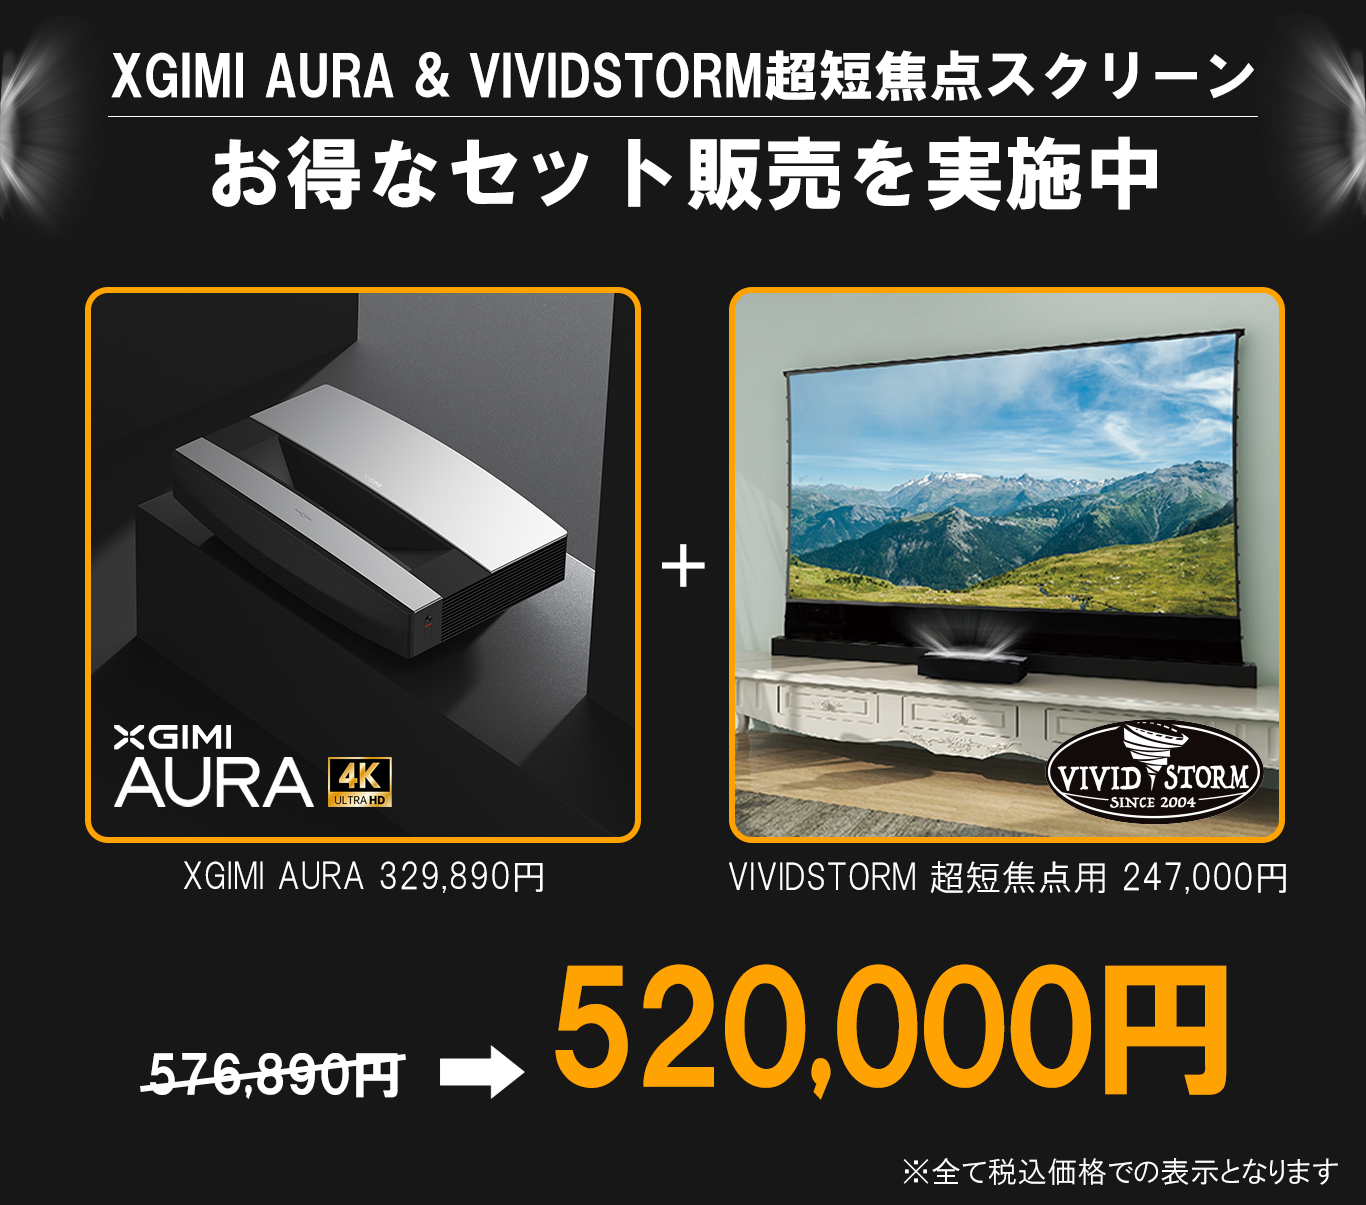 XGIMI AURA 超短焦点レーザープロジェクター「この大画面は、TVの未来 